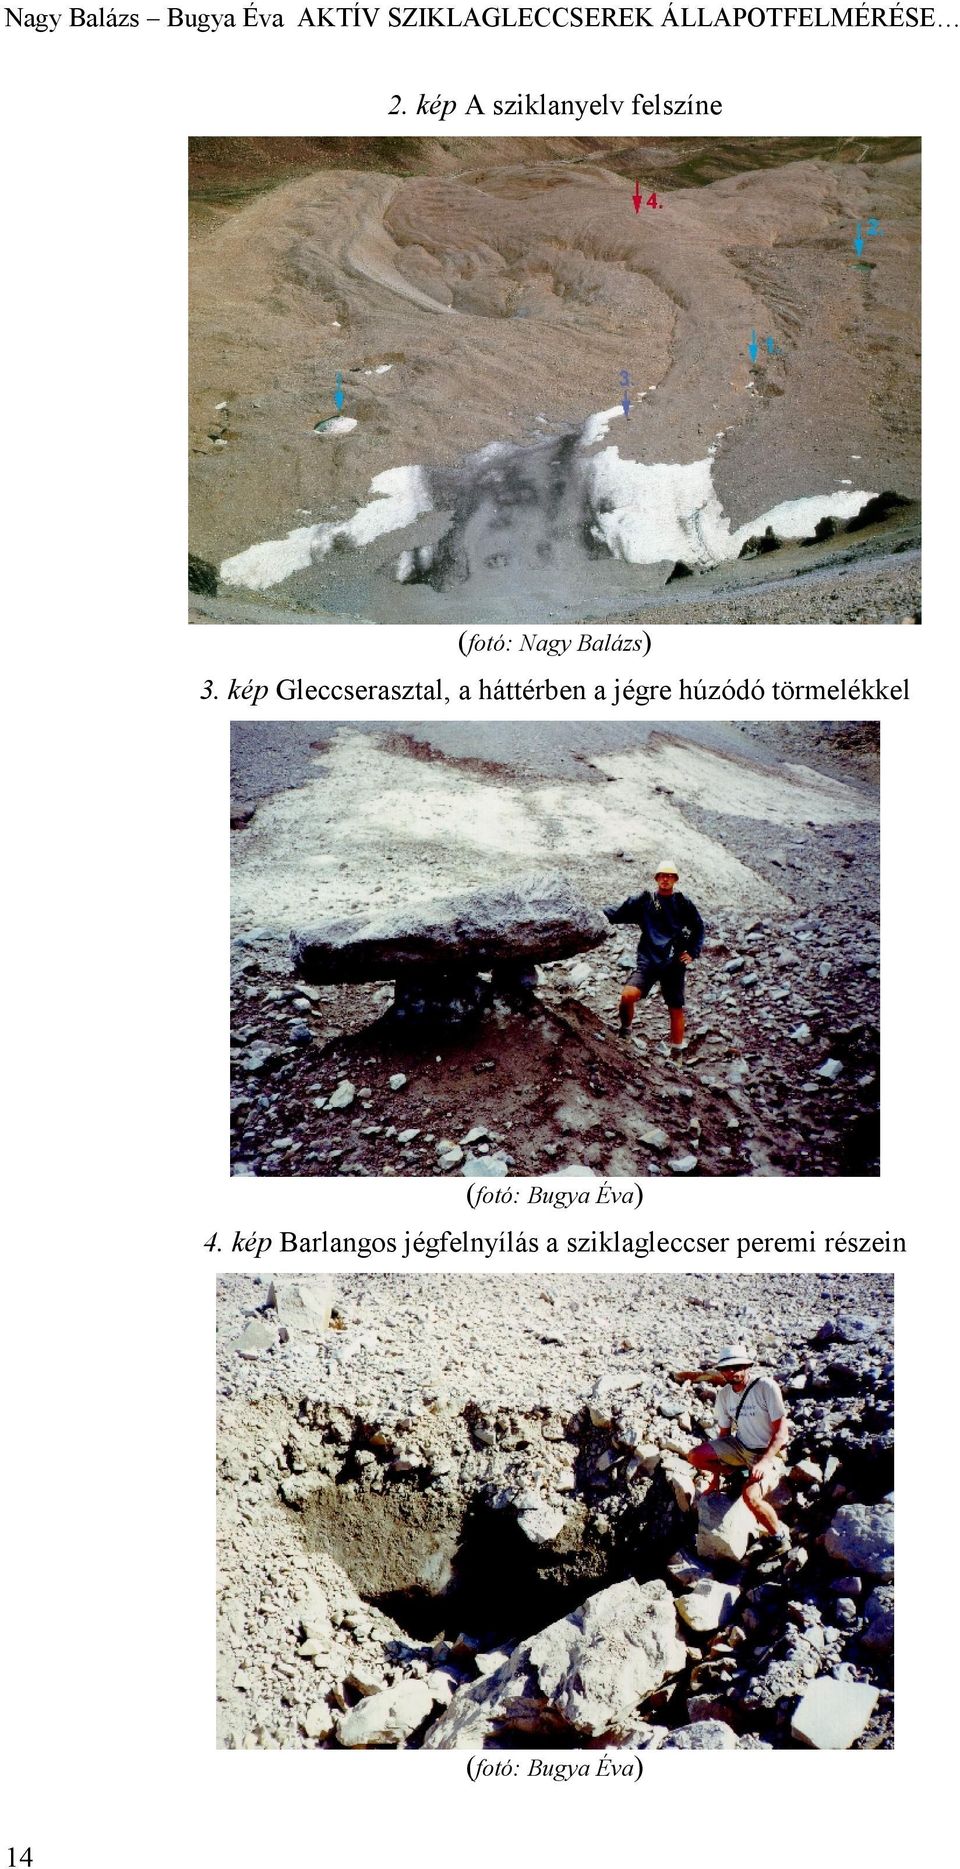 kép Gleccserasztal, a háttérben a jégre húzódó törmelékkel (fotó: